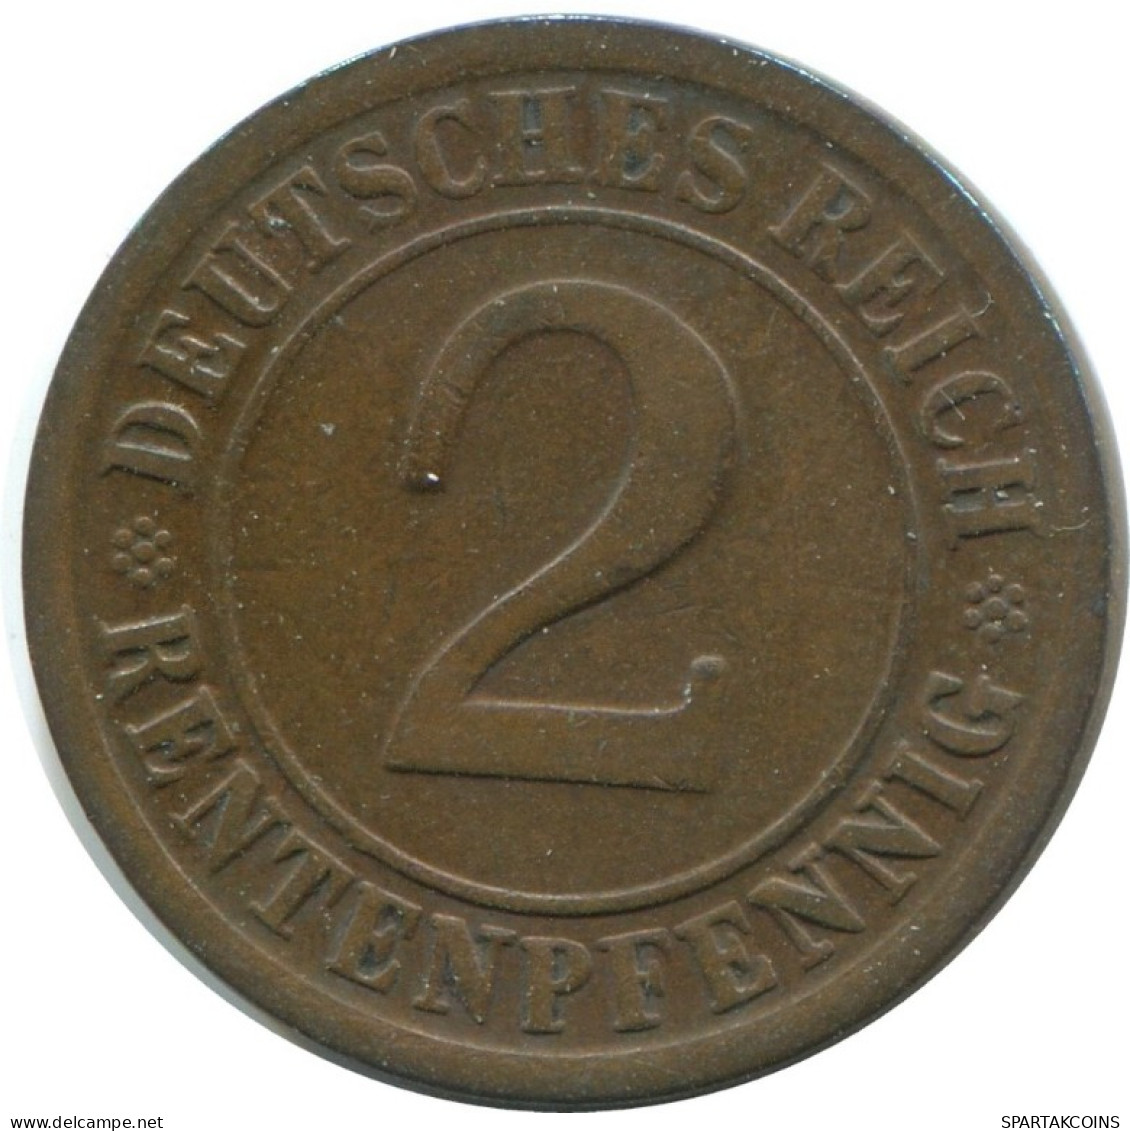 2 RENTENPFENNIG 1924 E DEUTSCHLAND Münze GERMANY #AE274.D.A - 2 Rentenpfennig & 2 Reichspfennig